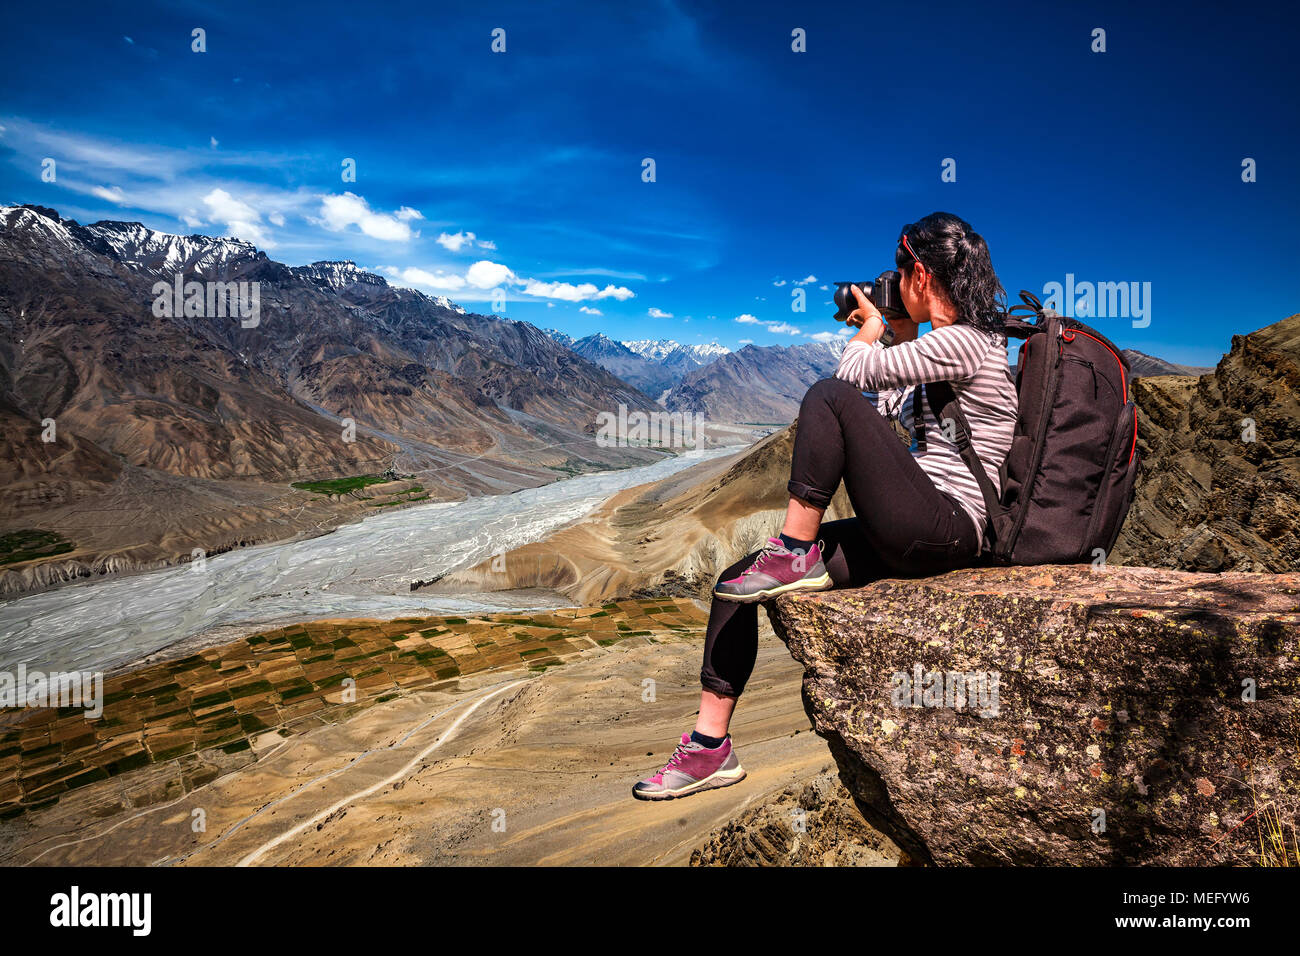 Dhankar gompa. La vallée de Spiti, Himachal Pradesh, Inde. Photographe Nature touriste avec appareil photo shoots en se tenant sur le haut de la montagne. Banque D'Images